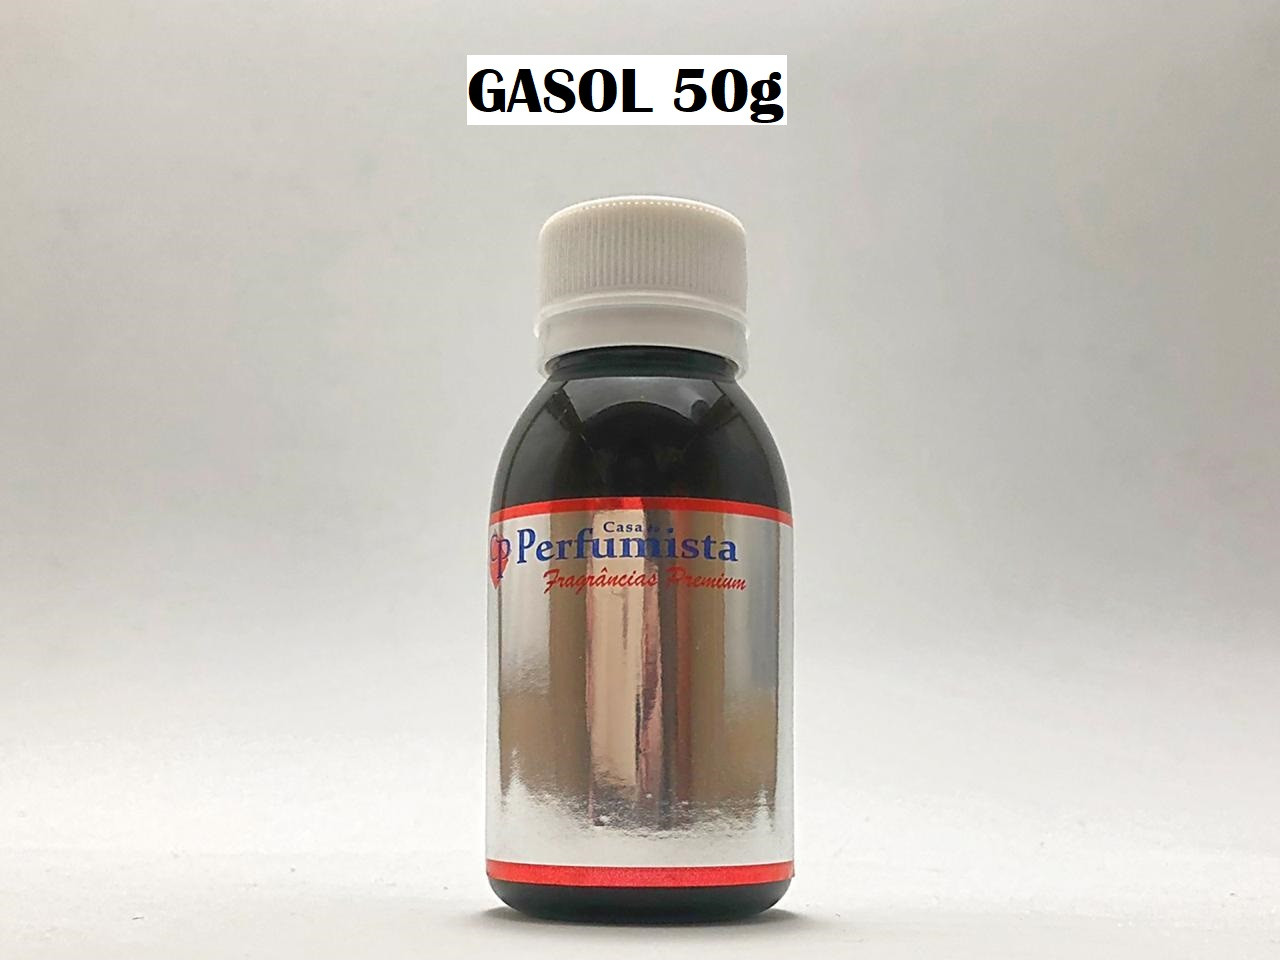 GASOL 50g - Inspiração: Diesel Fuel For Life Masculino